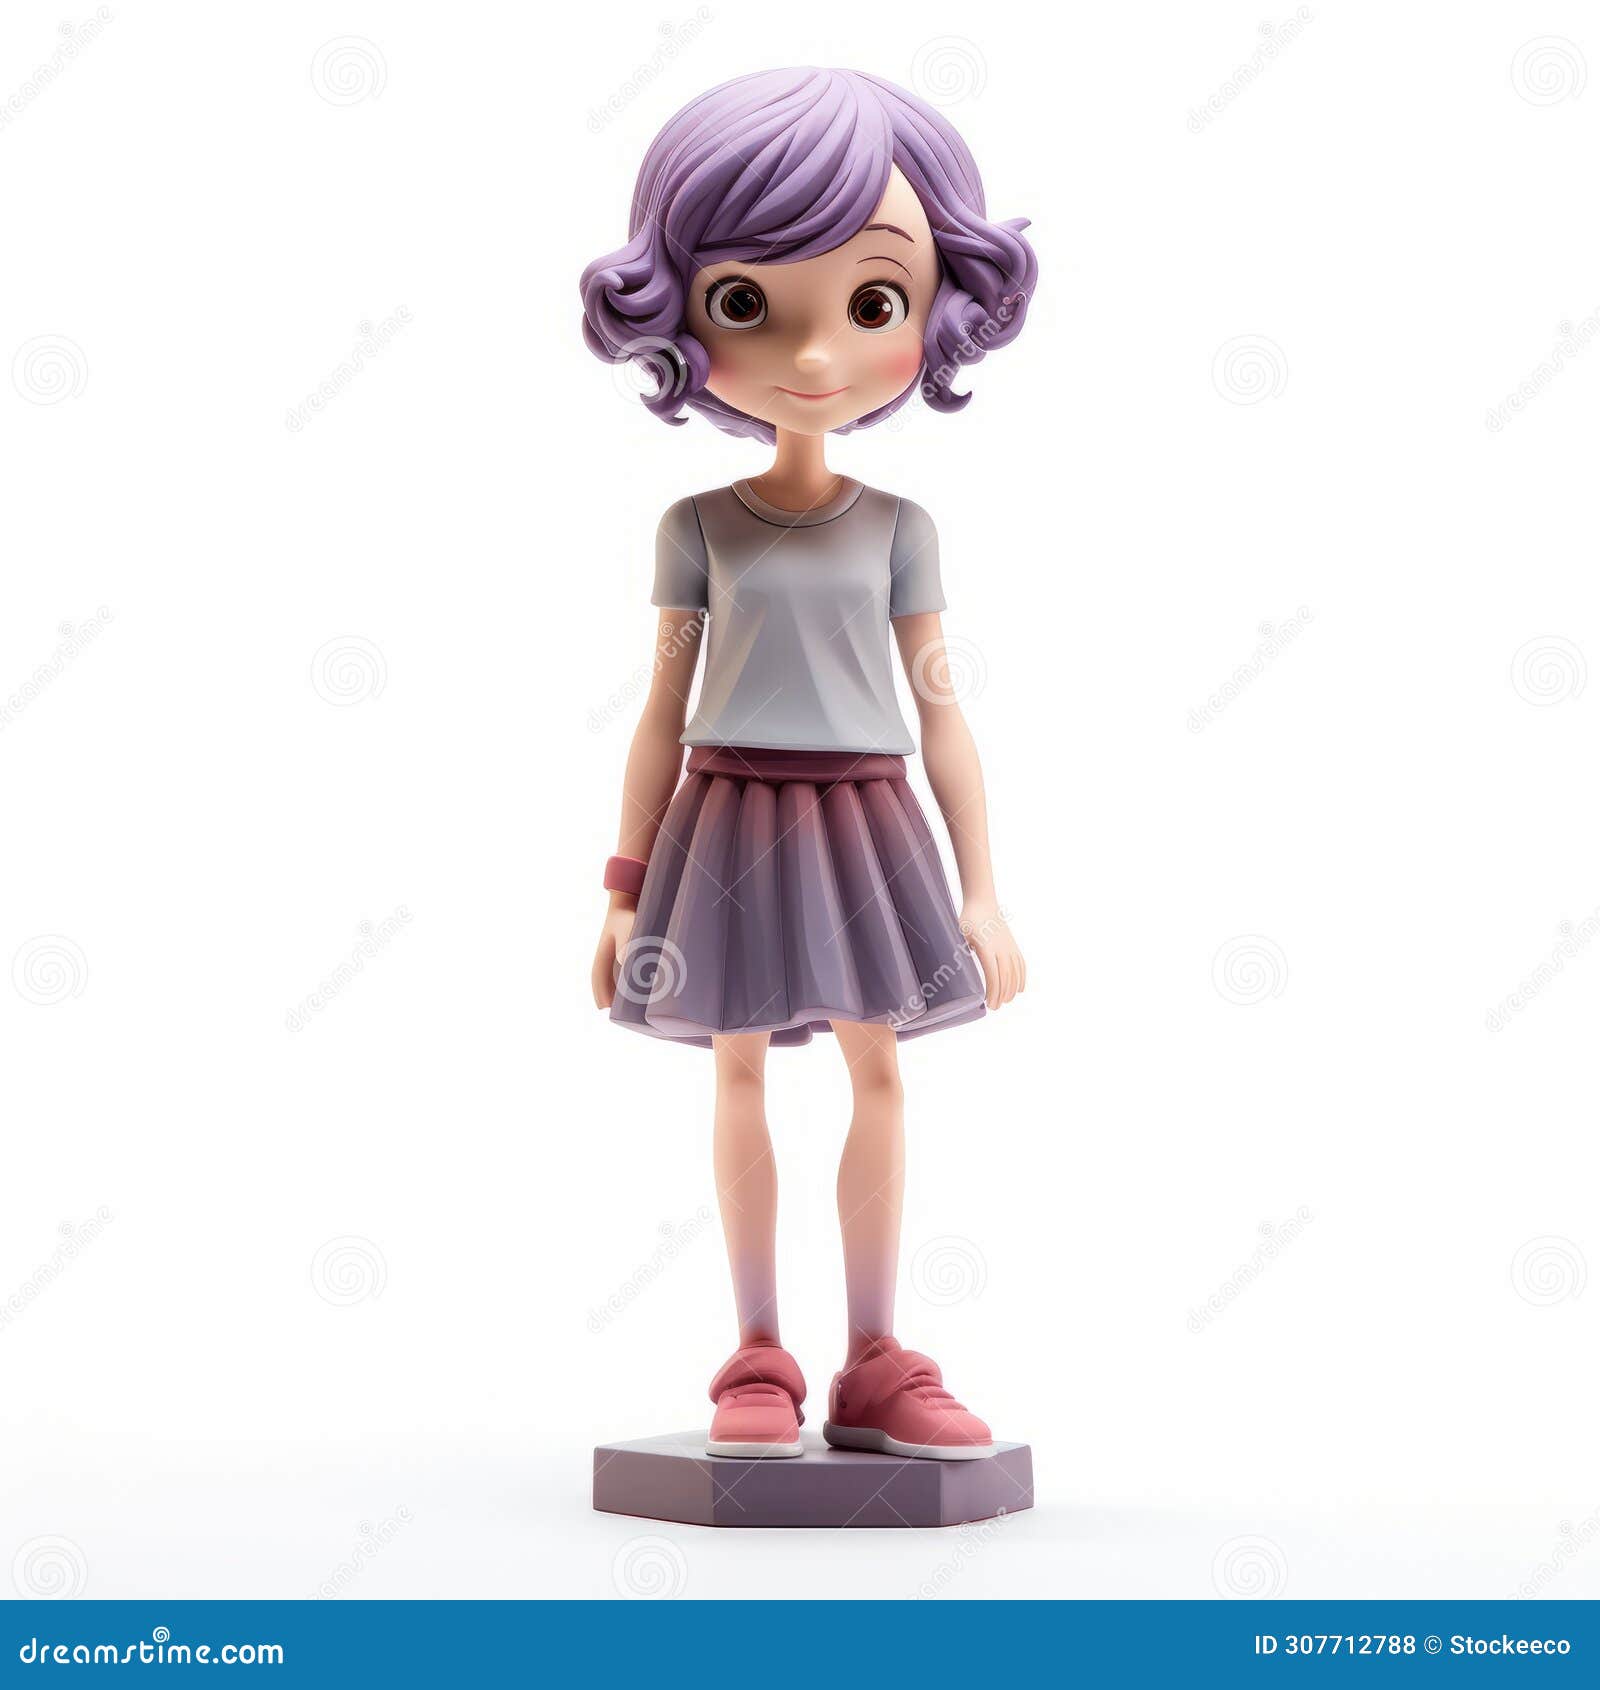 playful cartoon girl figurine with purple hair - ricoh ff-9d